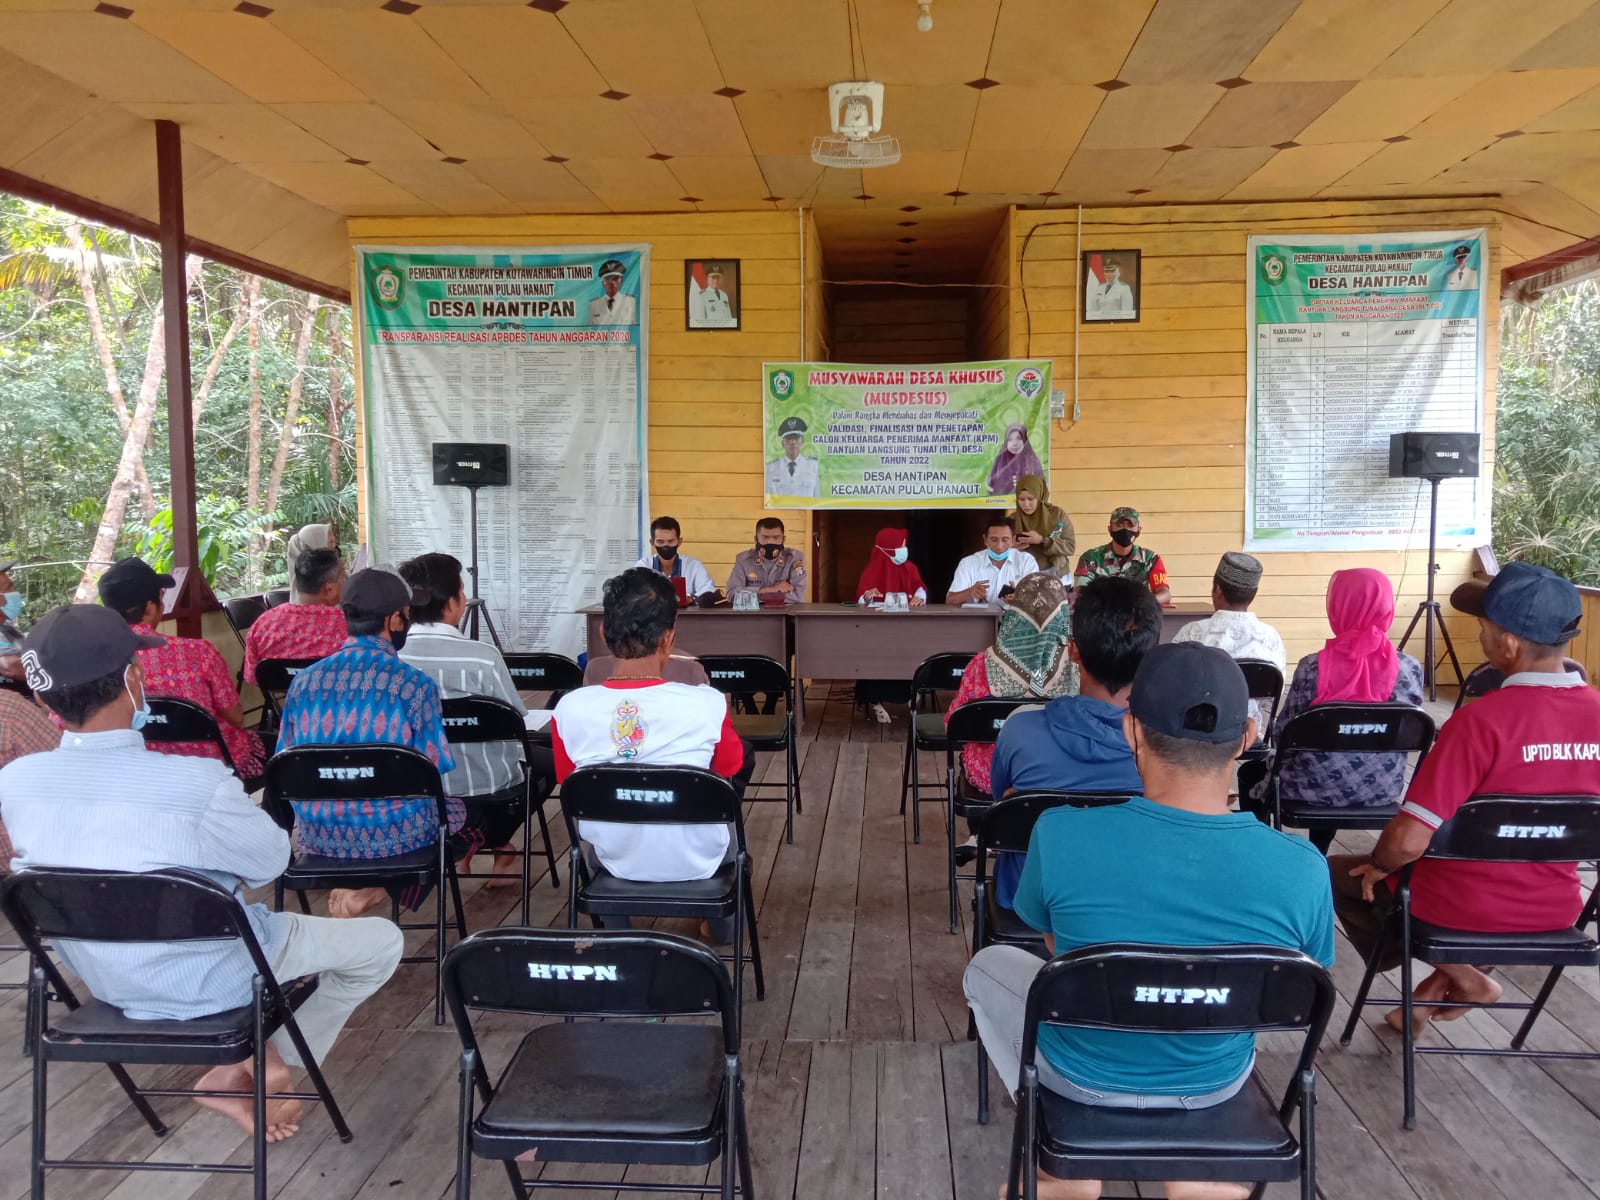 Kapolsek menghadiri kegiatan Musyawarah Desa khusus di Aula Desa Hantipan 1